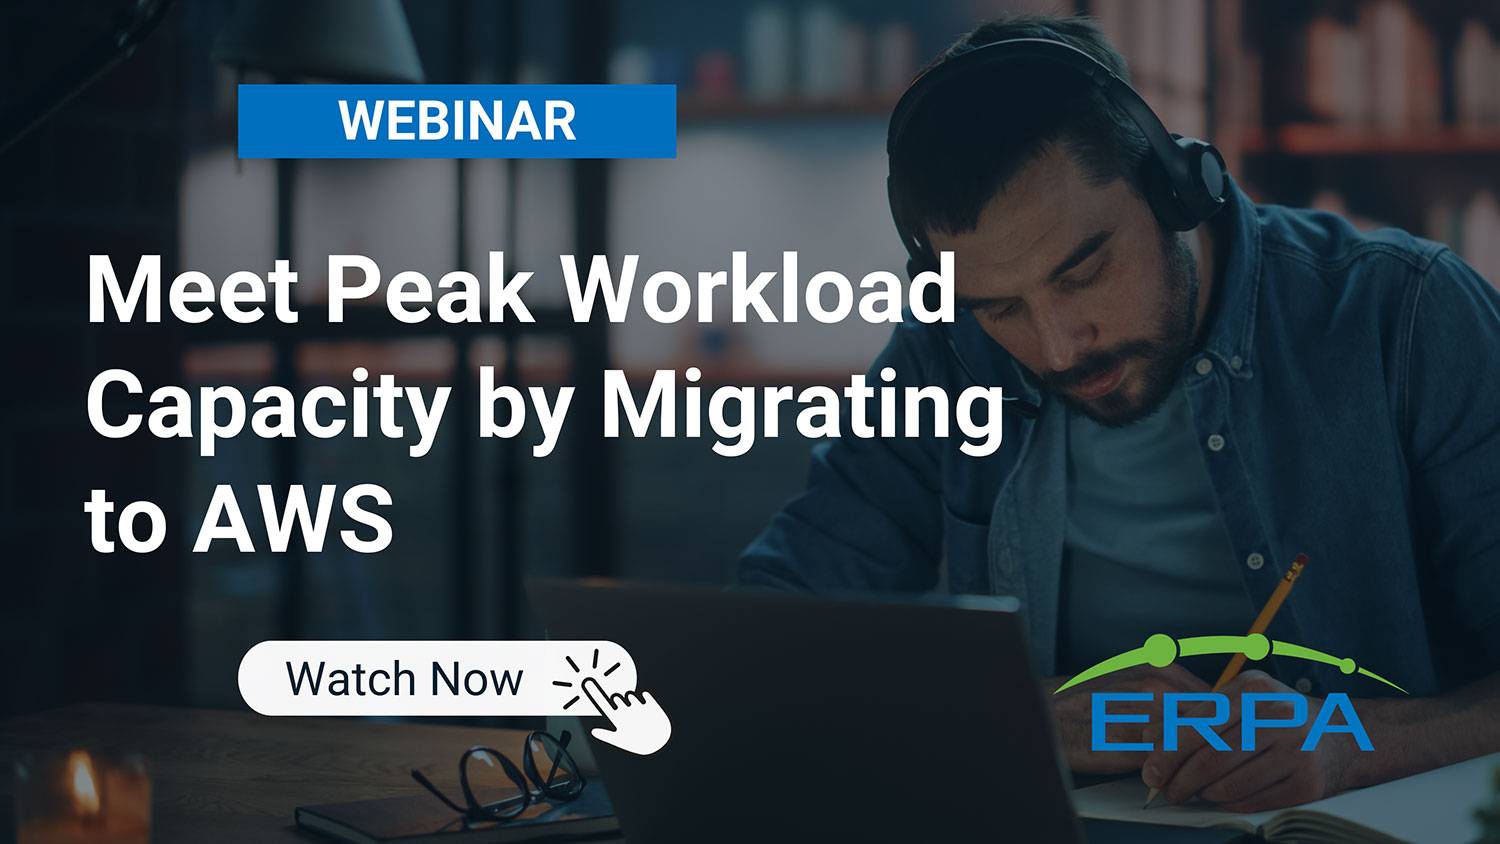 ERPA Webinar: Meet Peak Workload Capacity by Migrating to AWS